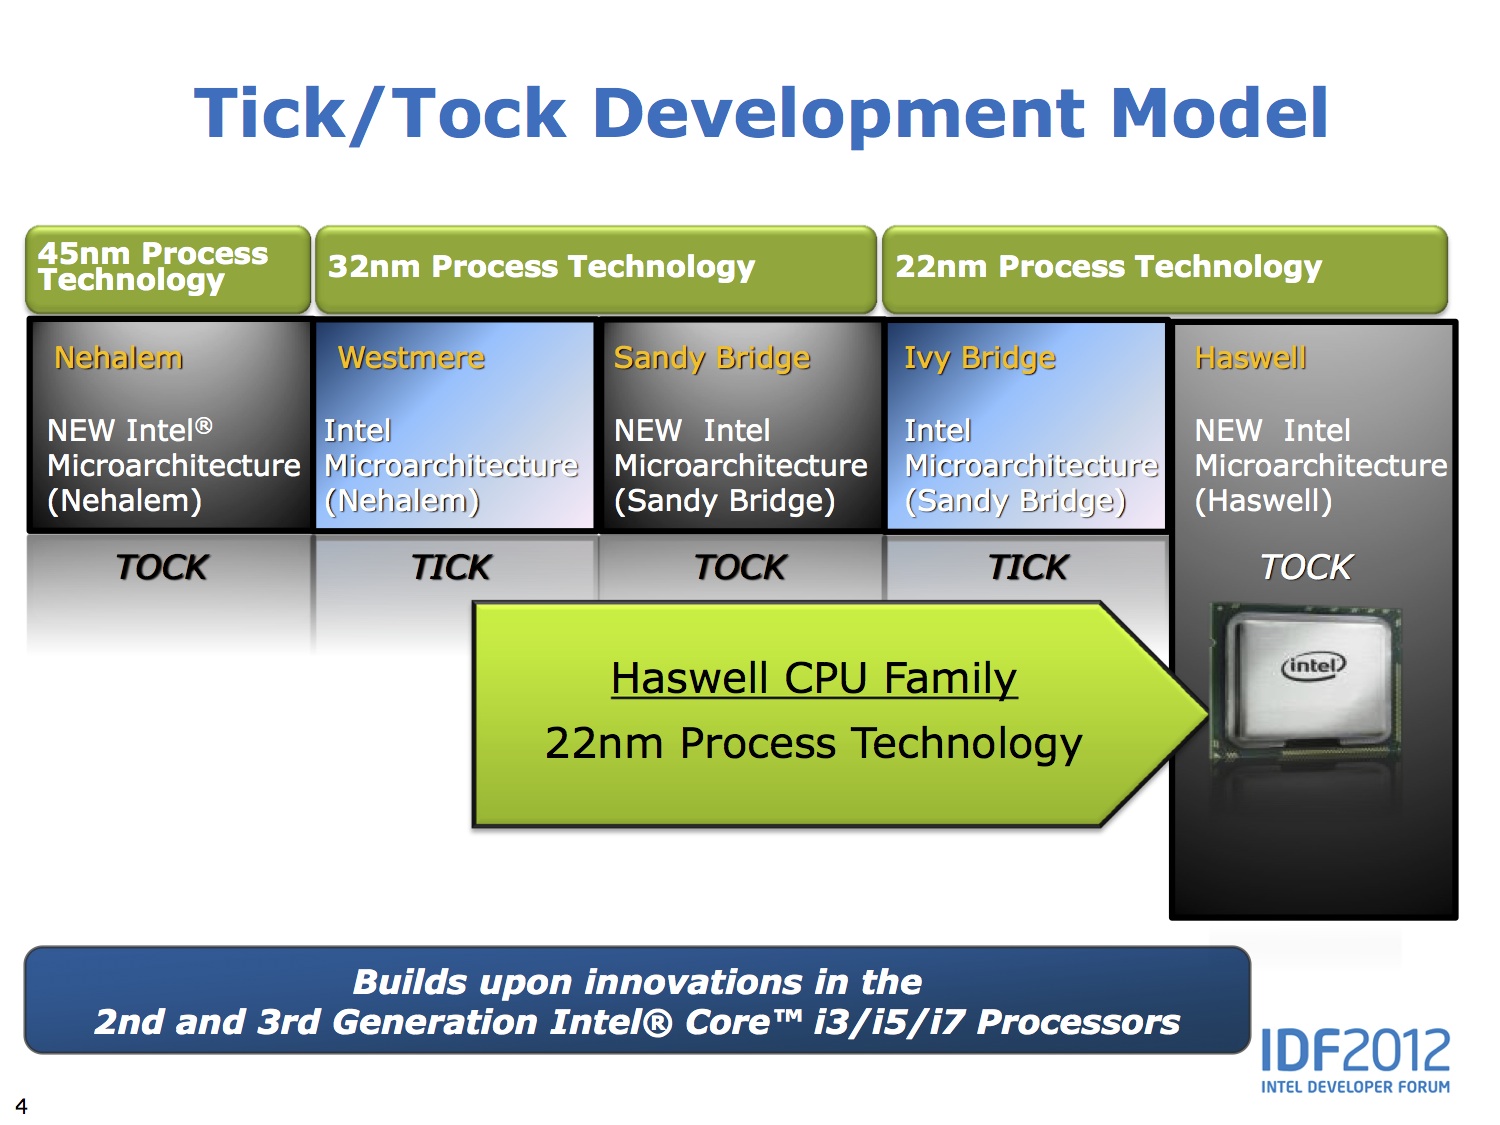 Dans l'évolution de ses processeurs, Intel fonctionne sur un rythme biennal intitulé Tick/Tock. Le Tick correspond à l'adoption d'une nouvelle finesse de gravure. Ainsi, en 2012, il a permis d'introduire une finesse de 22 nm. En 2013, l'année du Tock correspond à la sortie du Haswell. La finesse ne change pas, en revanche l'architecture est optimisée. En 2014, le Tick devrait conserver cette architecture et réduire encore la finesse de gravure. © Intel